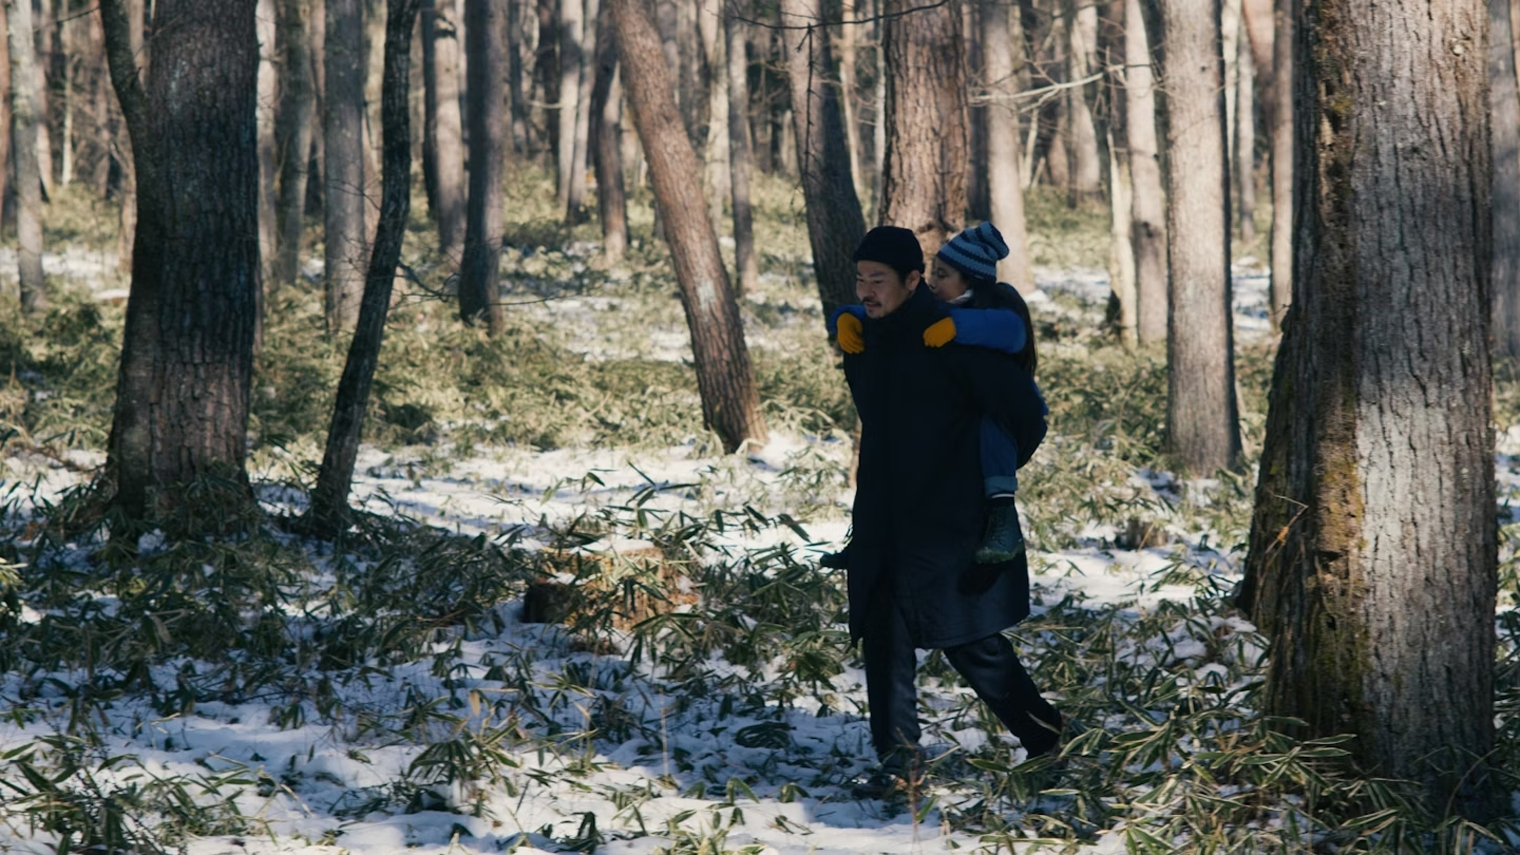 Жизнь Такуми и Ханы напоминает сказку — отец и дочь ежедневно бродят по лесу, не боясь заблудиться